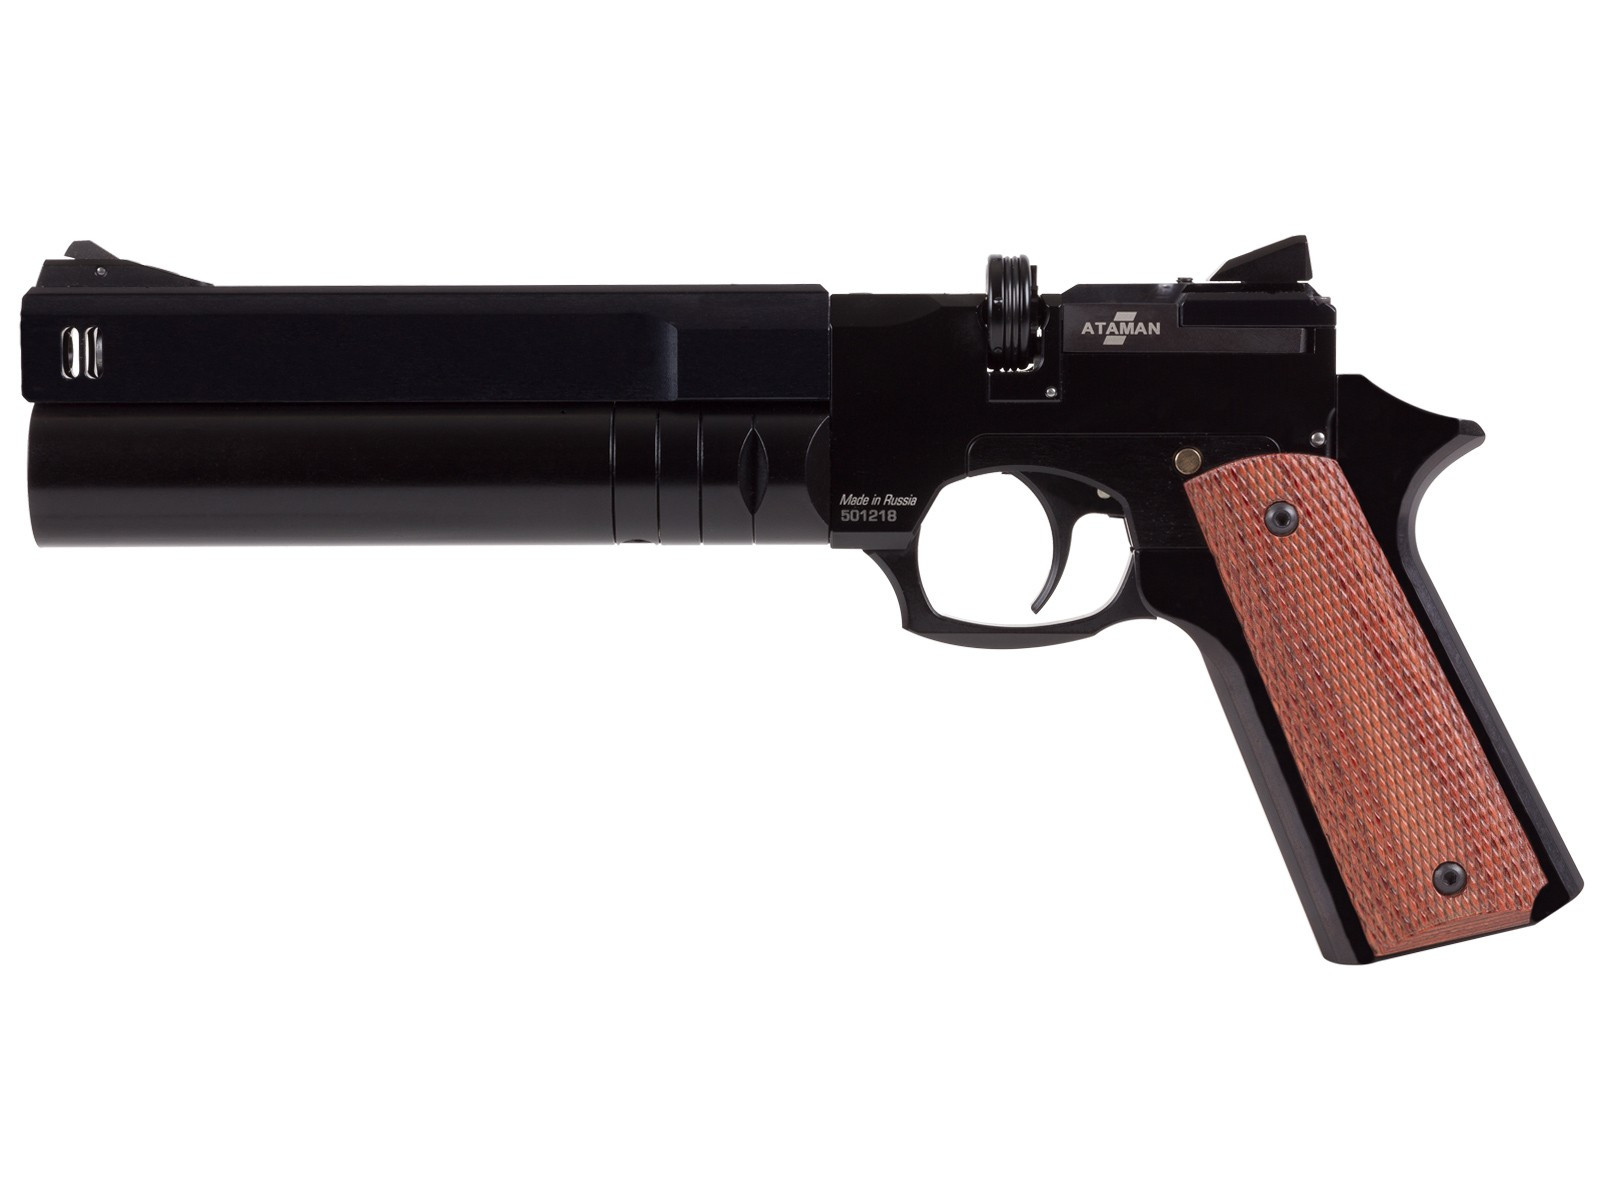 Ataman AP16 Regulated Compact Air Pistol, Black